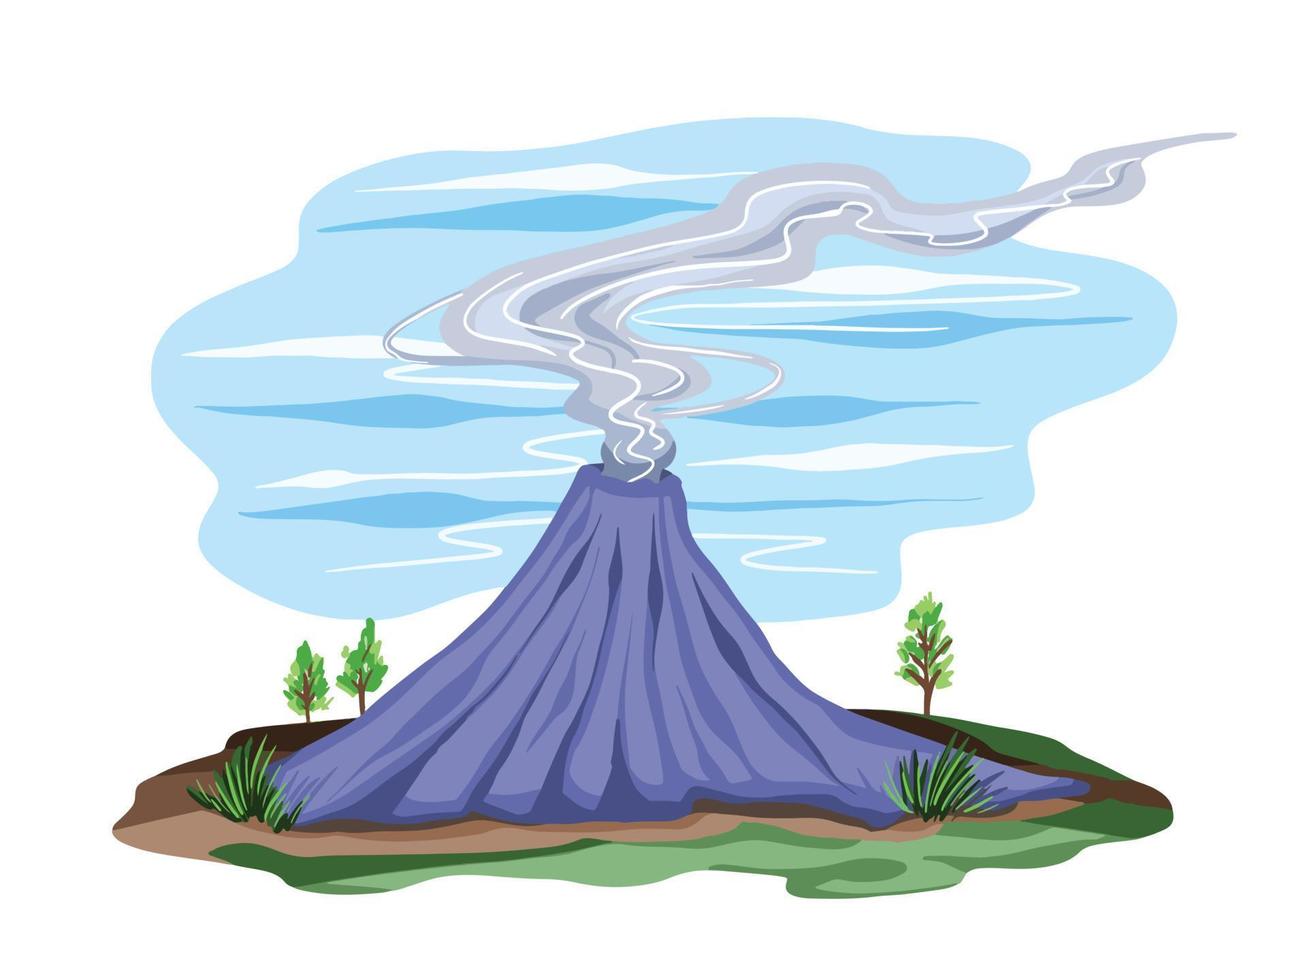 Berg mit Rauch, der von innen kommt, mit Gras und Land, das ihn umgibt. kleine Baum- und Grasdekoration herum. Natur-Vektor-Illustration isoliert auf weißem Hintergrund vektor